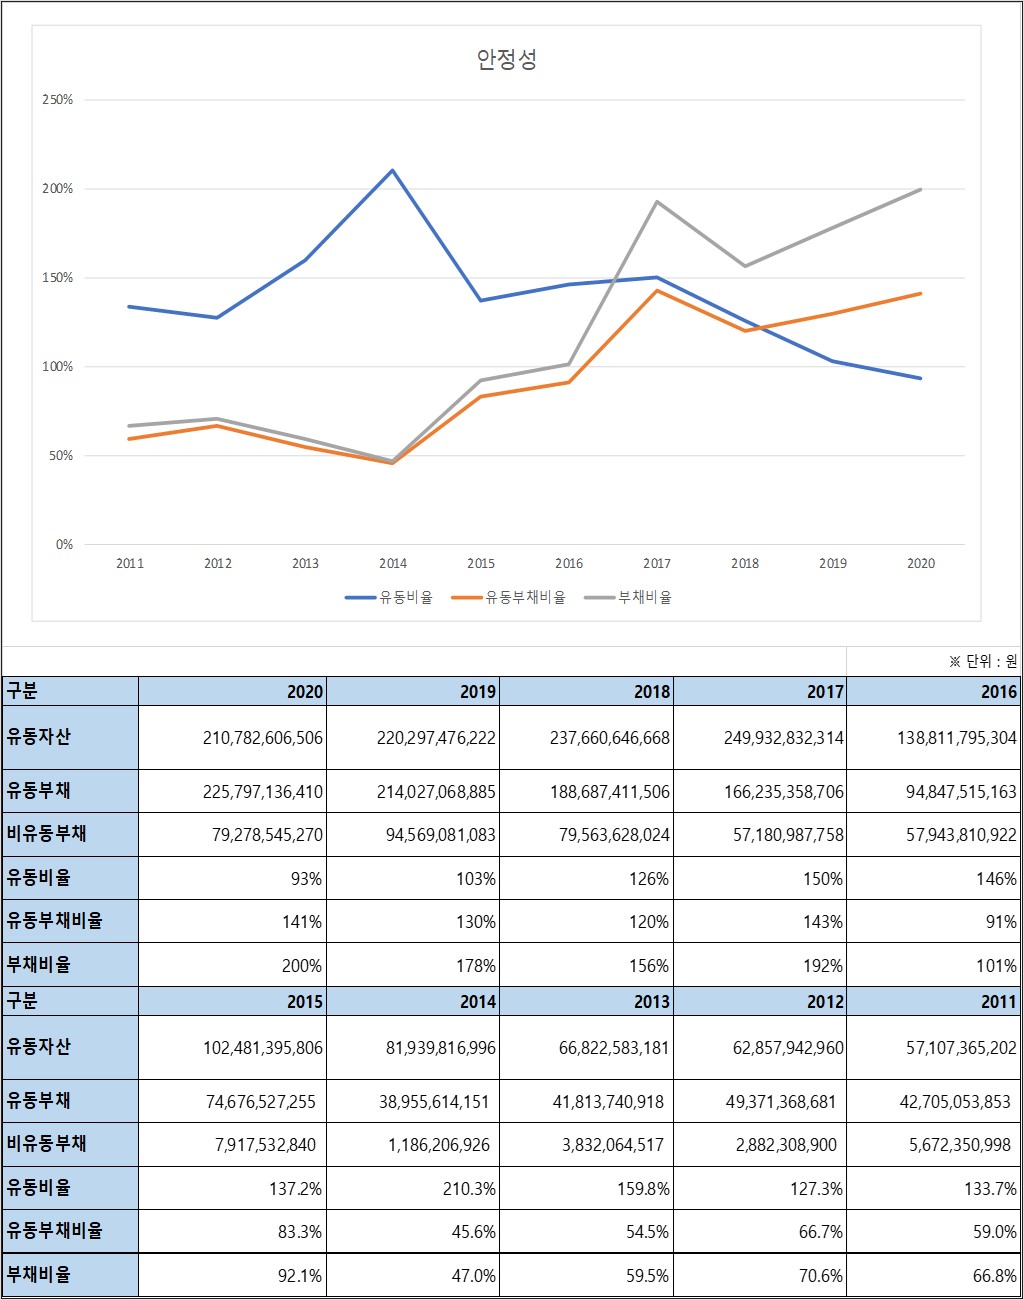 한국전자금융 안정성비율